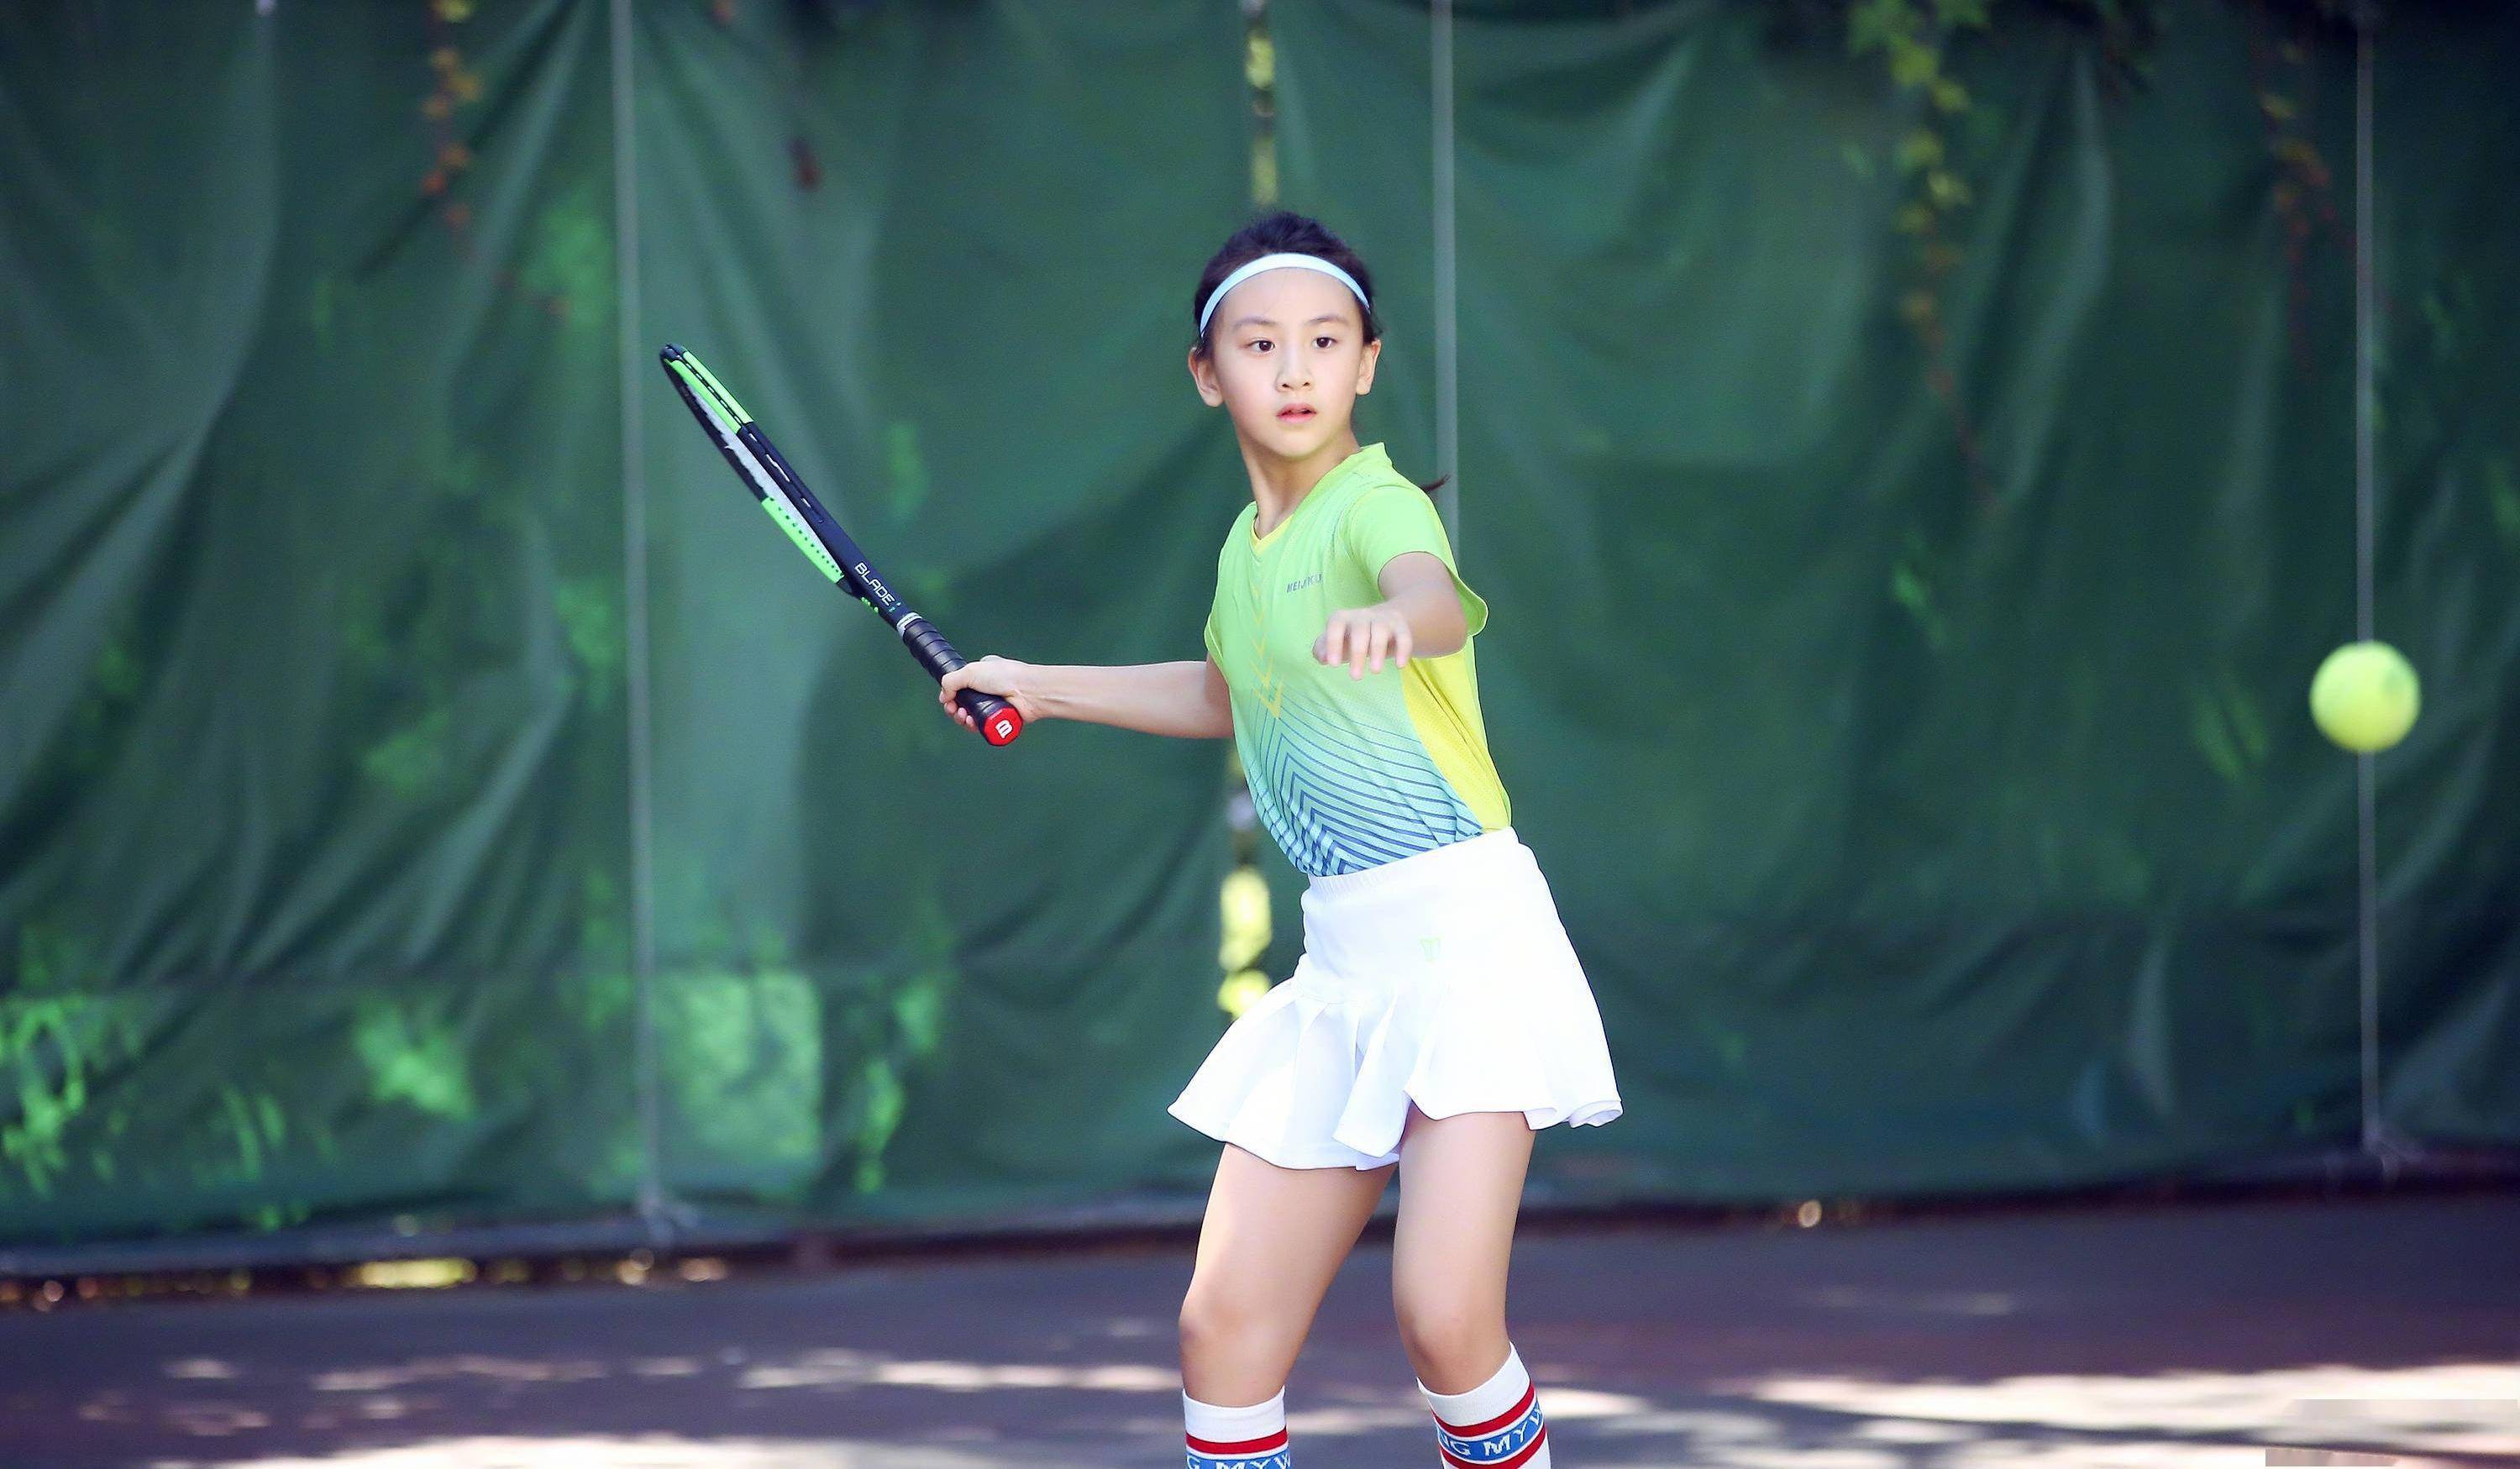 田亮女儿打网球图片